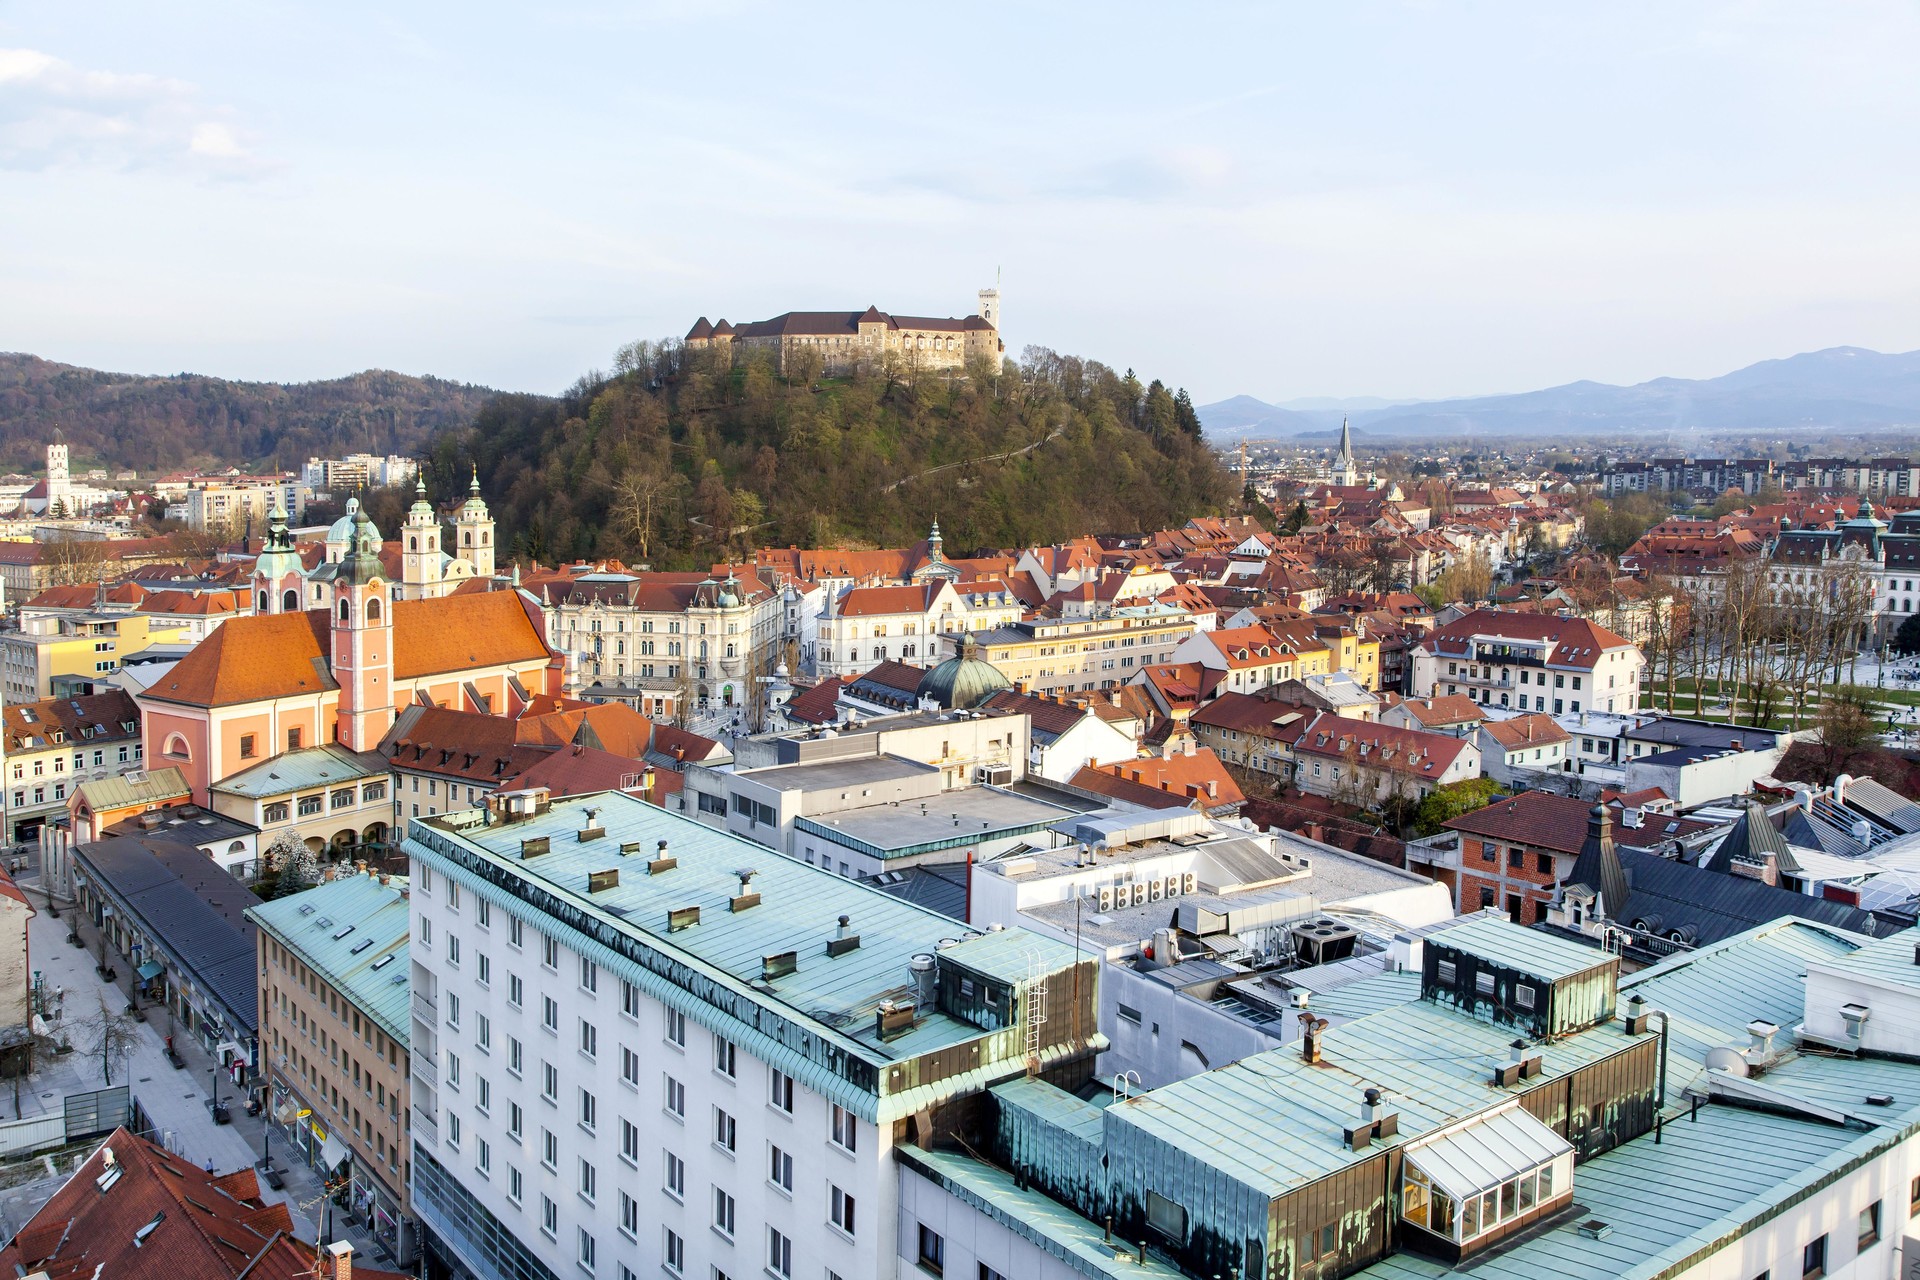 Ljubljana ustvari dober vtis že s svojim imenom, razmišlja pesnica.